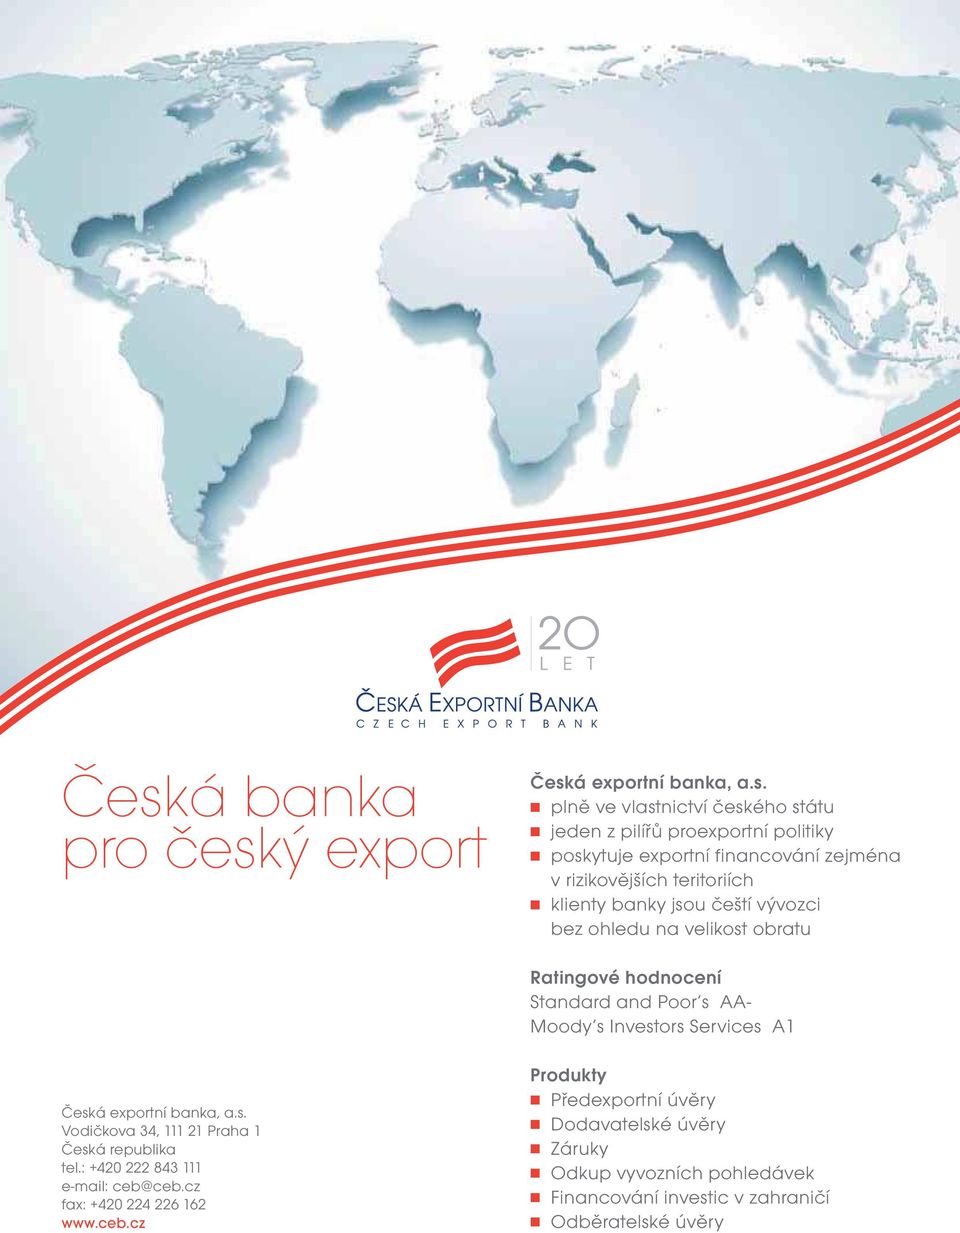 Investors Services A1 Česká exportní banka, a.s. Vodičkova 34, 111 21 Praha 1 Česká republika tel.: +420 222 843 111 e-mail: ceb@ceb.